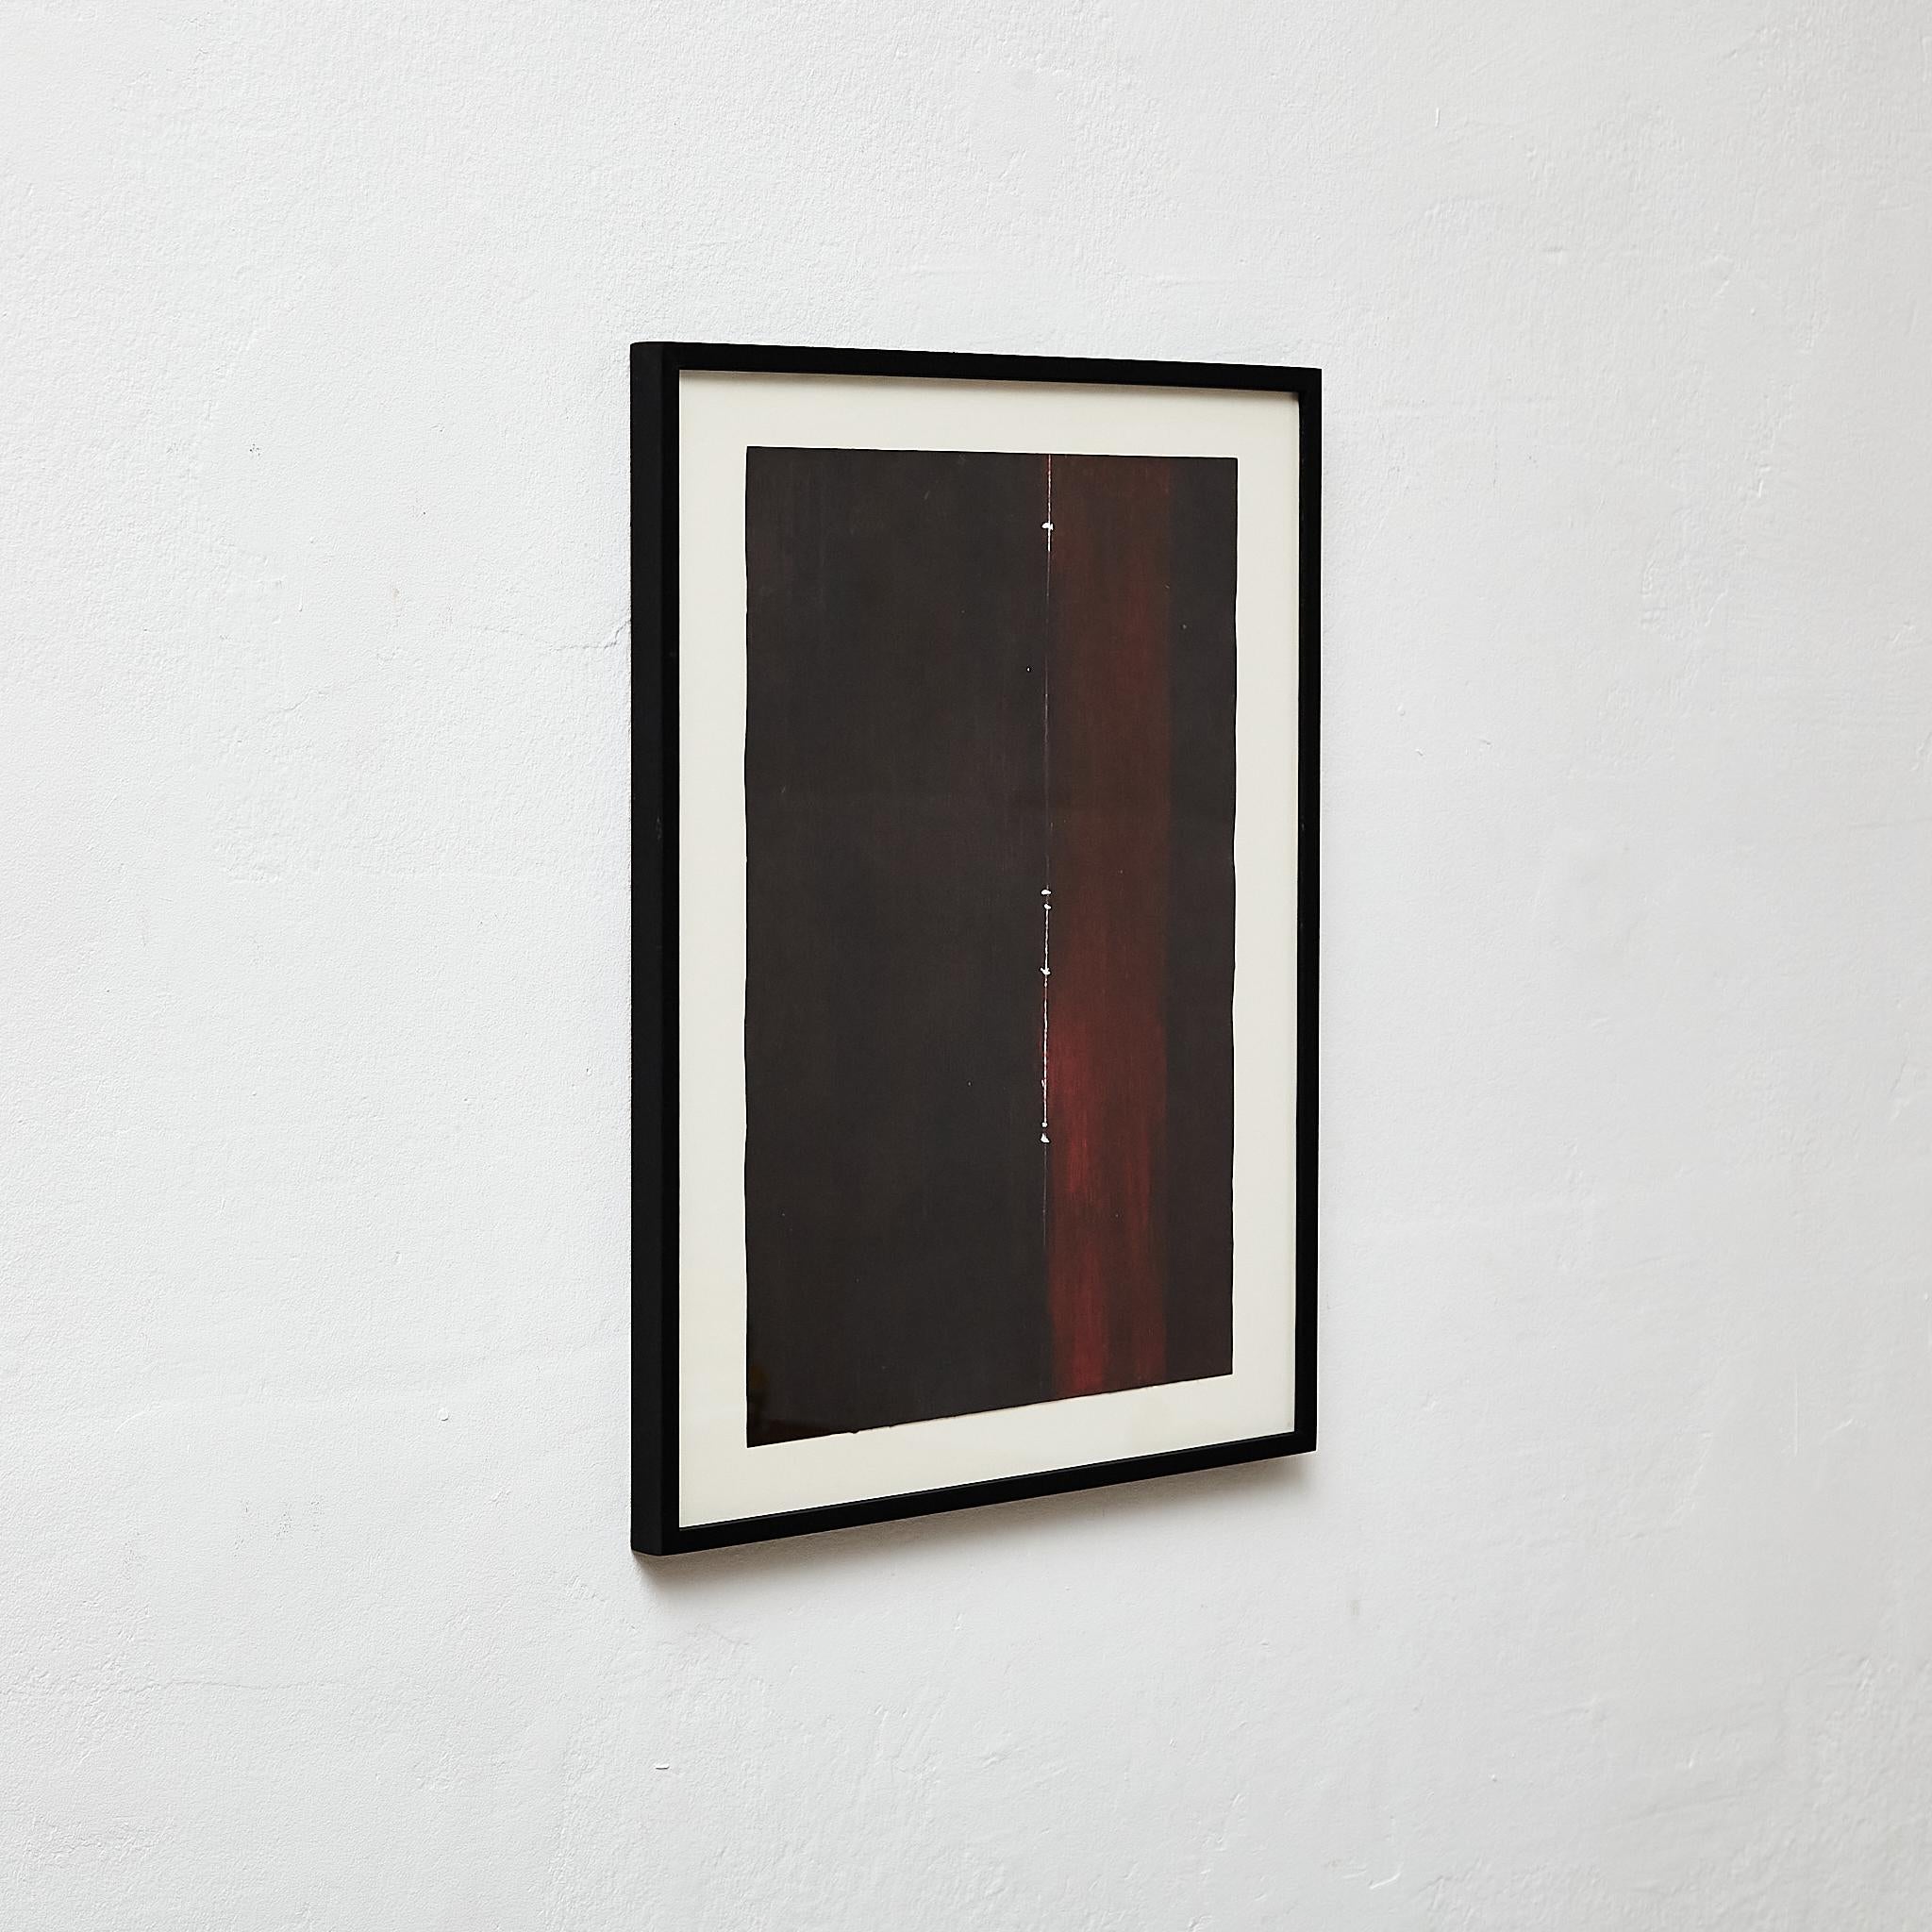 Dieses fesselnde abstrakte Kunstwerk, das 2019 von Javier Agudo geschaffen wurde, zeigt den einzigartigen Stil des Künstlers und seine Inspiration durch große Meister wie Mark Rothko. Das Werk ist gerahmt, was seine Präsentation aufwertet, und kann